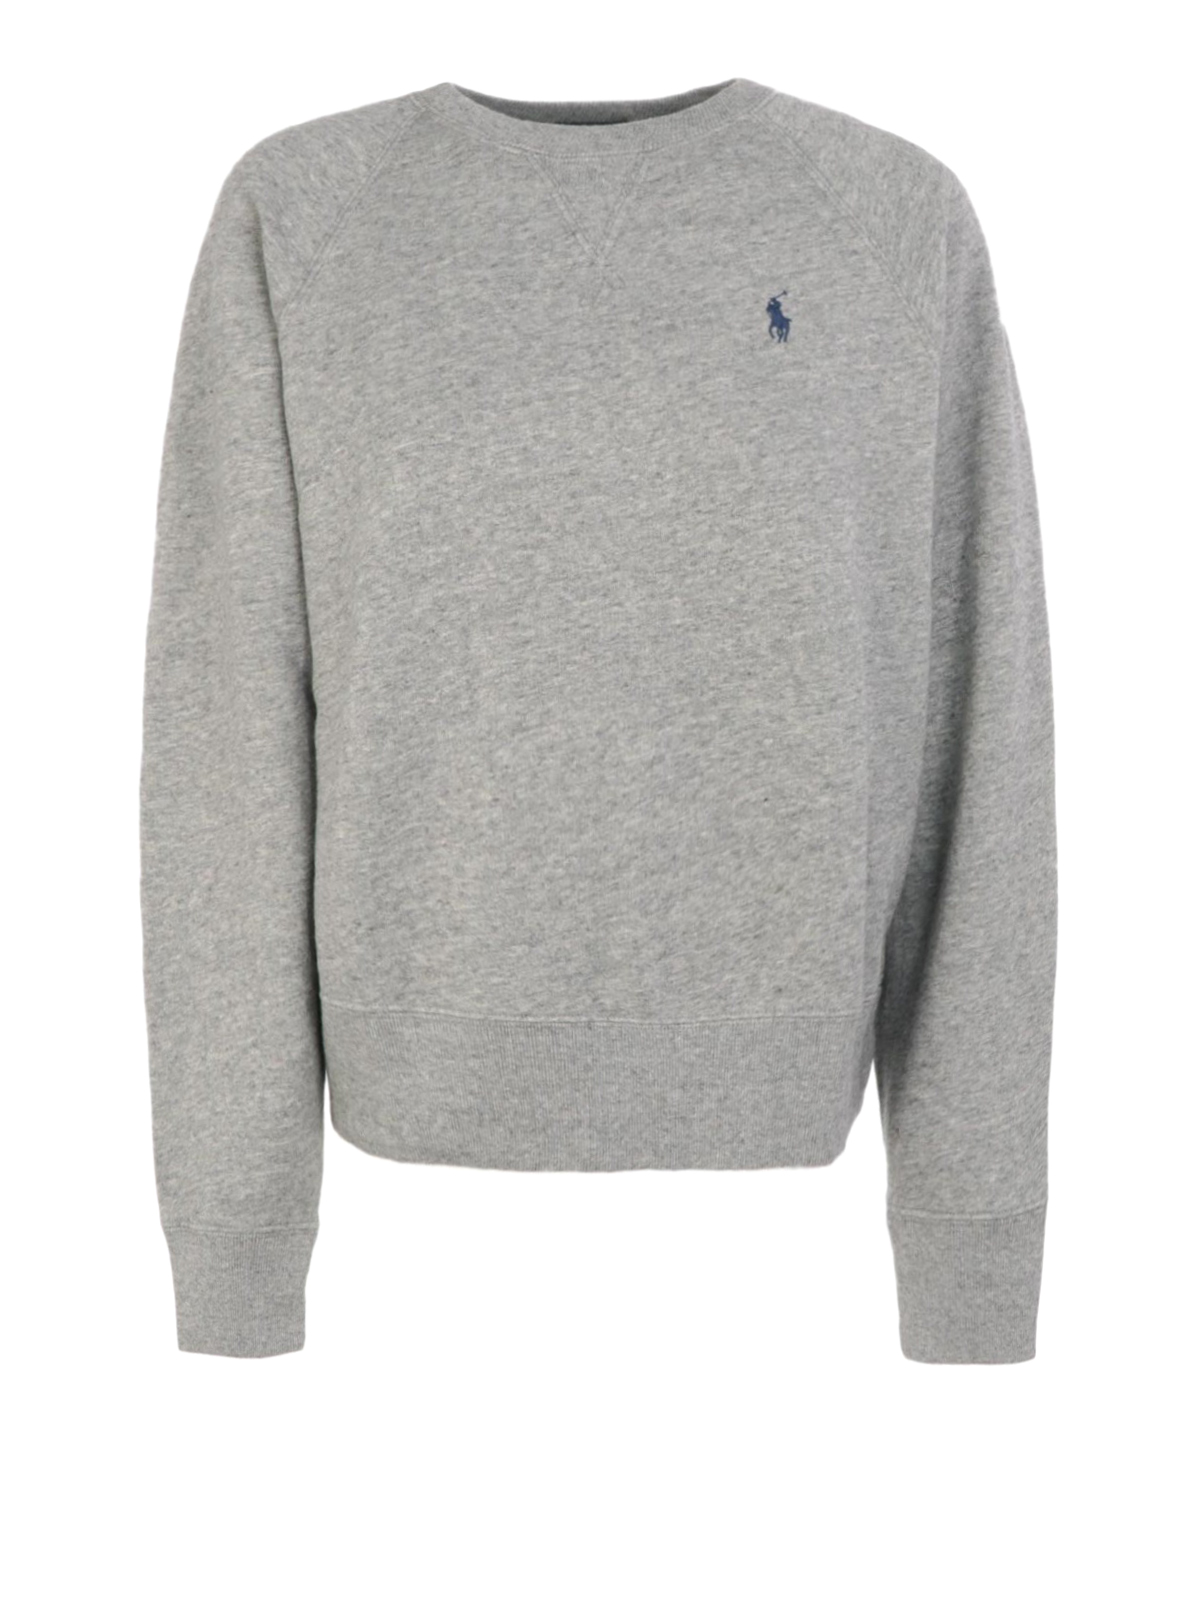 Sweatshirts & Sweaters Polo Ralph Lauren - Light grey crew neck 